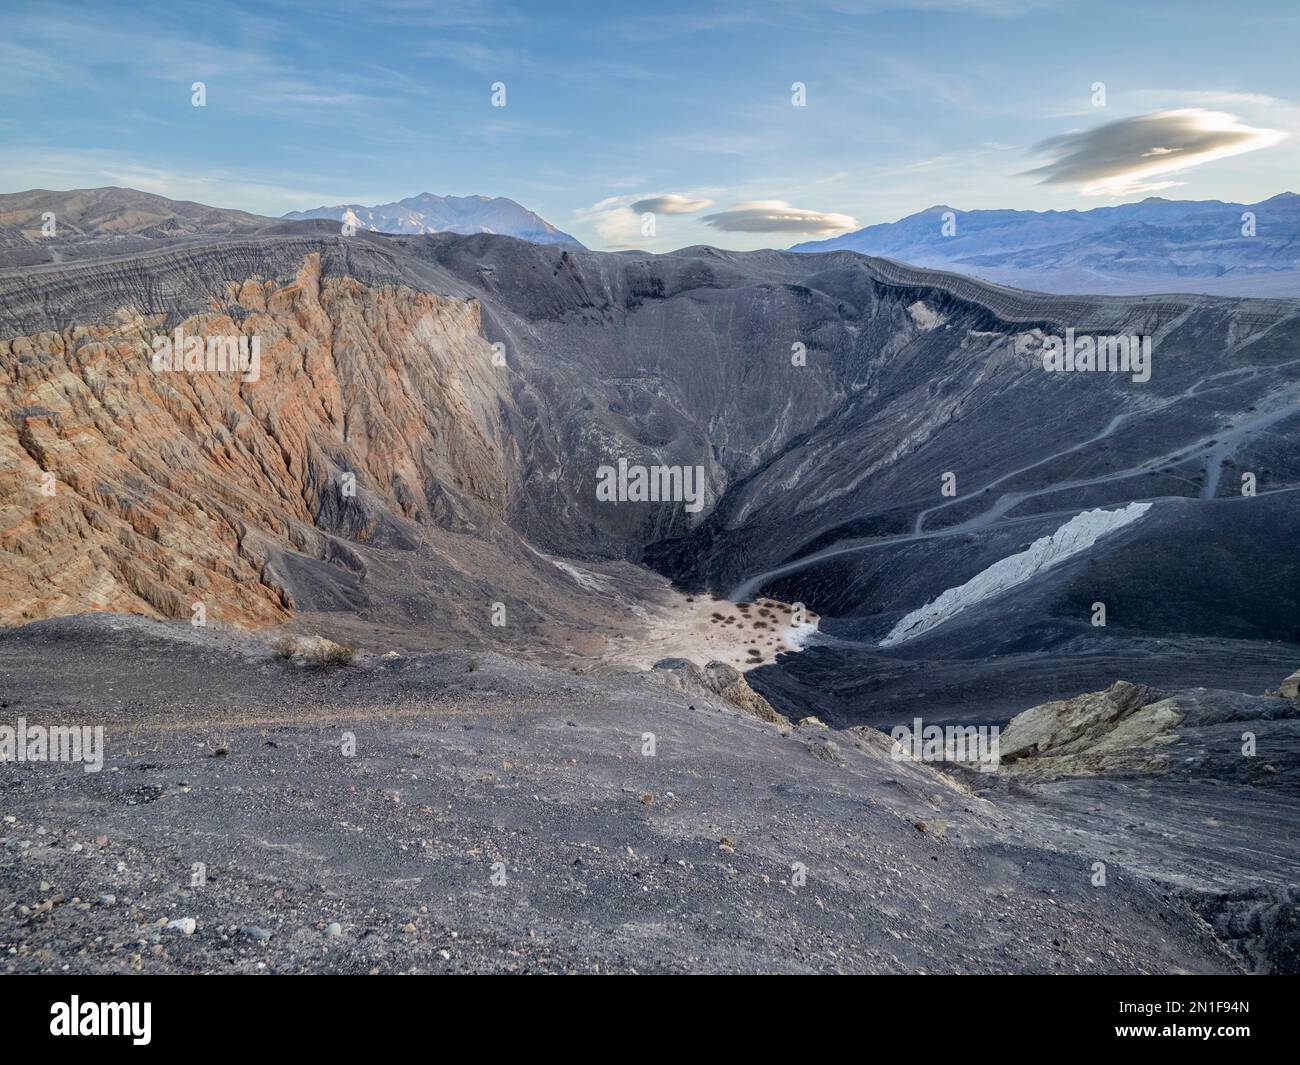 Cratère d'Ubehebe, cratère volcanique à 800 mètres de large et 600 pieds de profondeur, parc national de la Vallée de la mort, Californie, États-Unis d'Amérique Banque D'Images